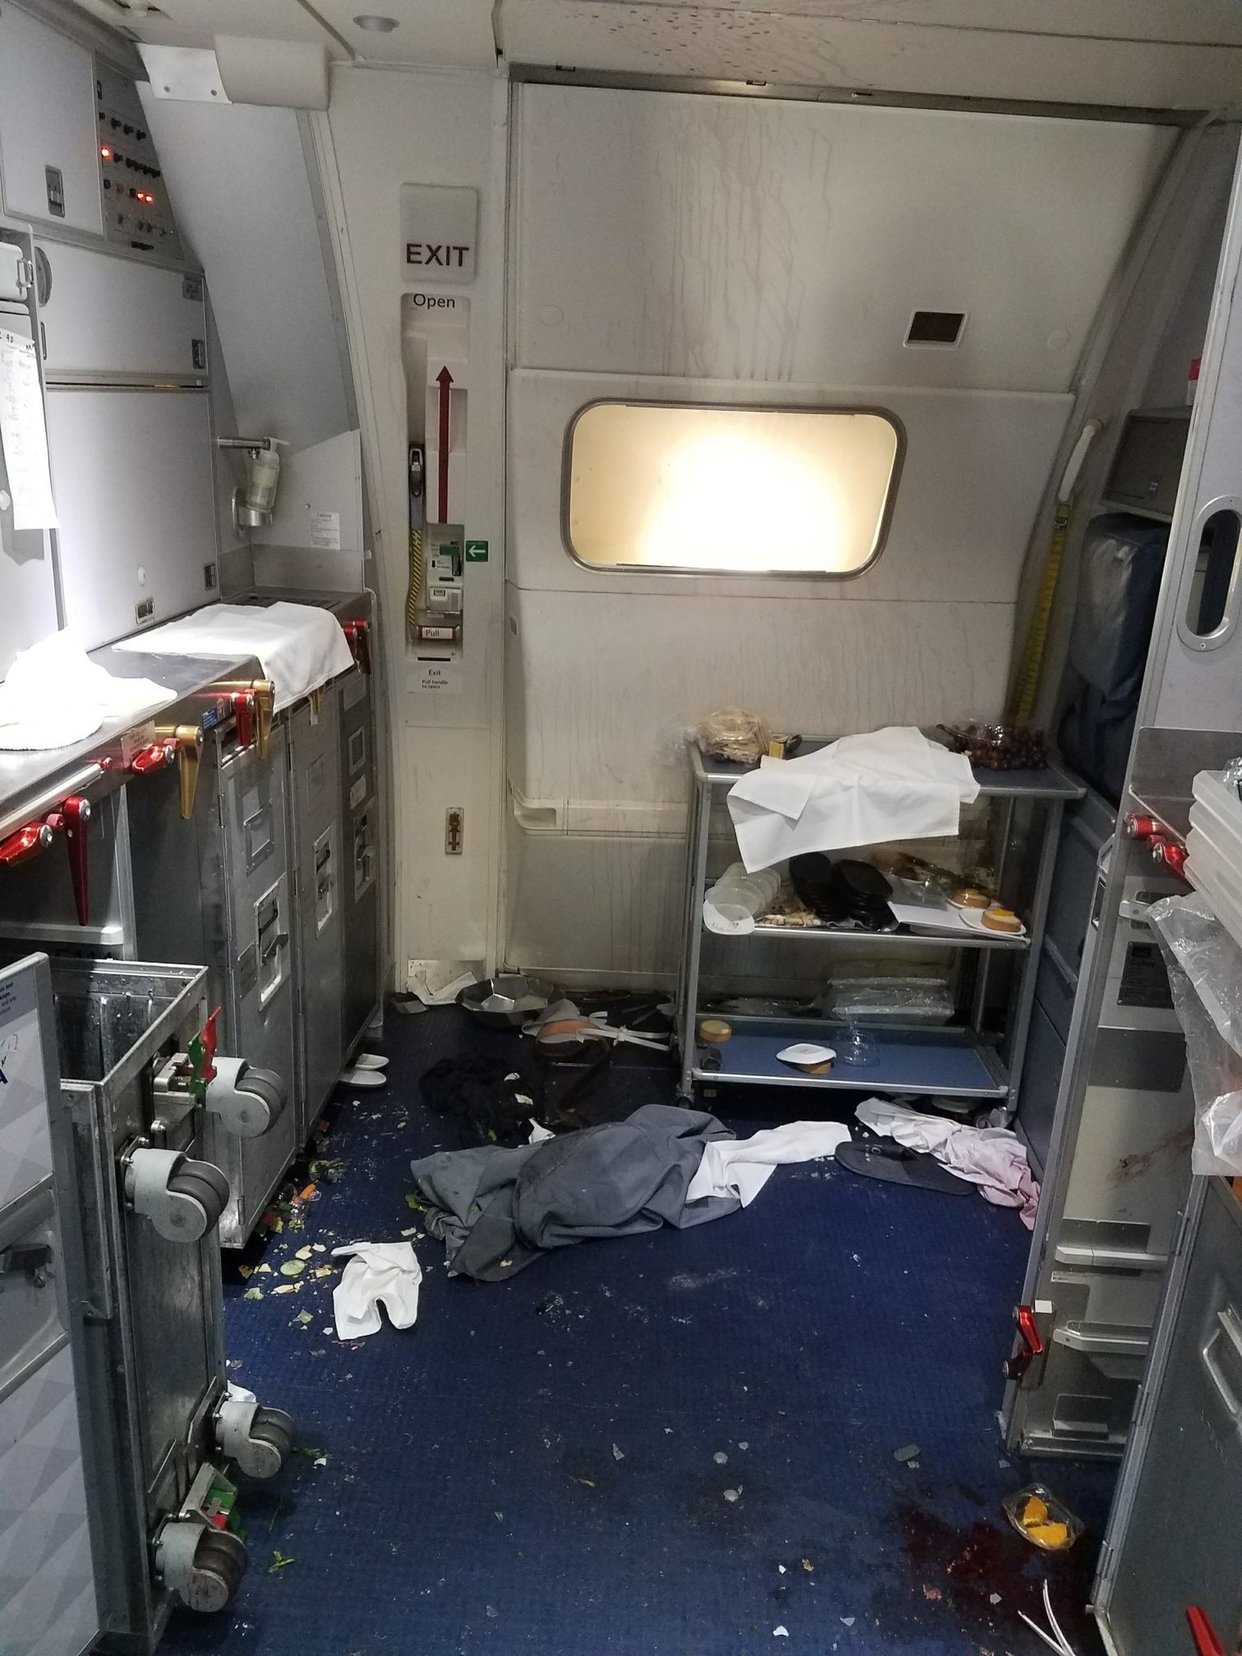 US Man Tried to Open Door on Beijing Flight, Sparking Brawl